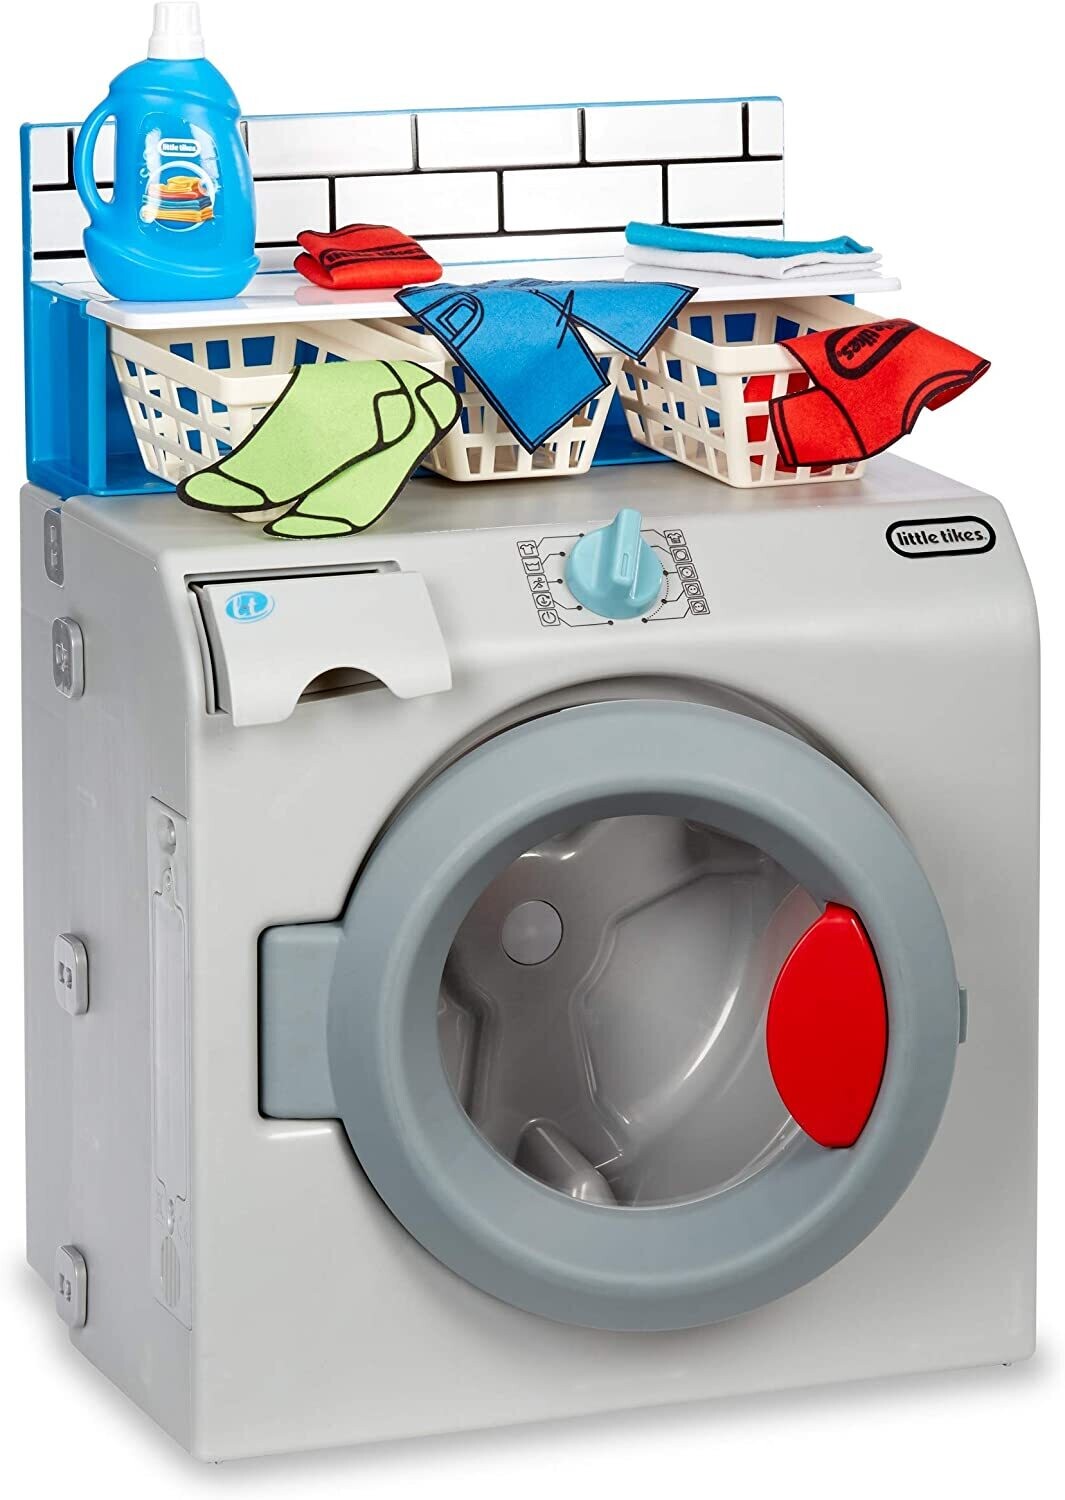 First Washer-Dryer